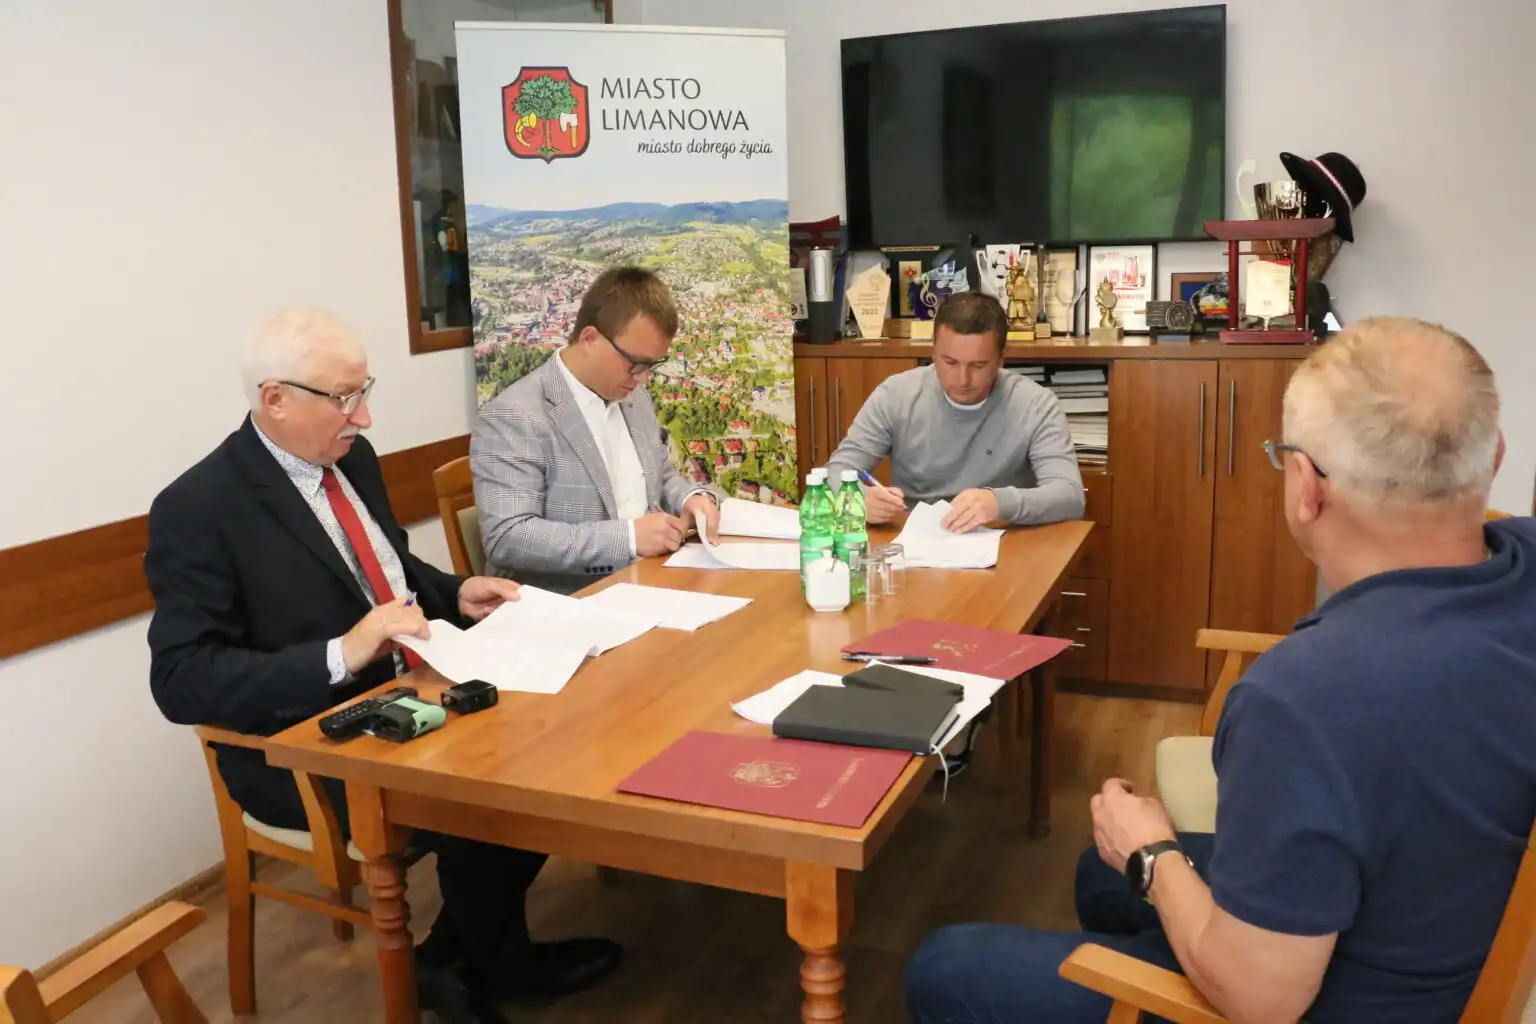 Podpisano umowy na opracowanie dokumentacji budowy dwóch chodników w Limanowej